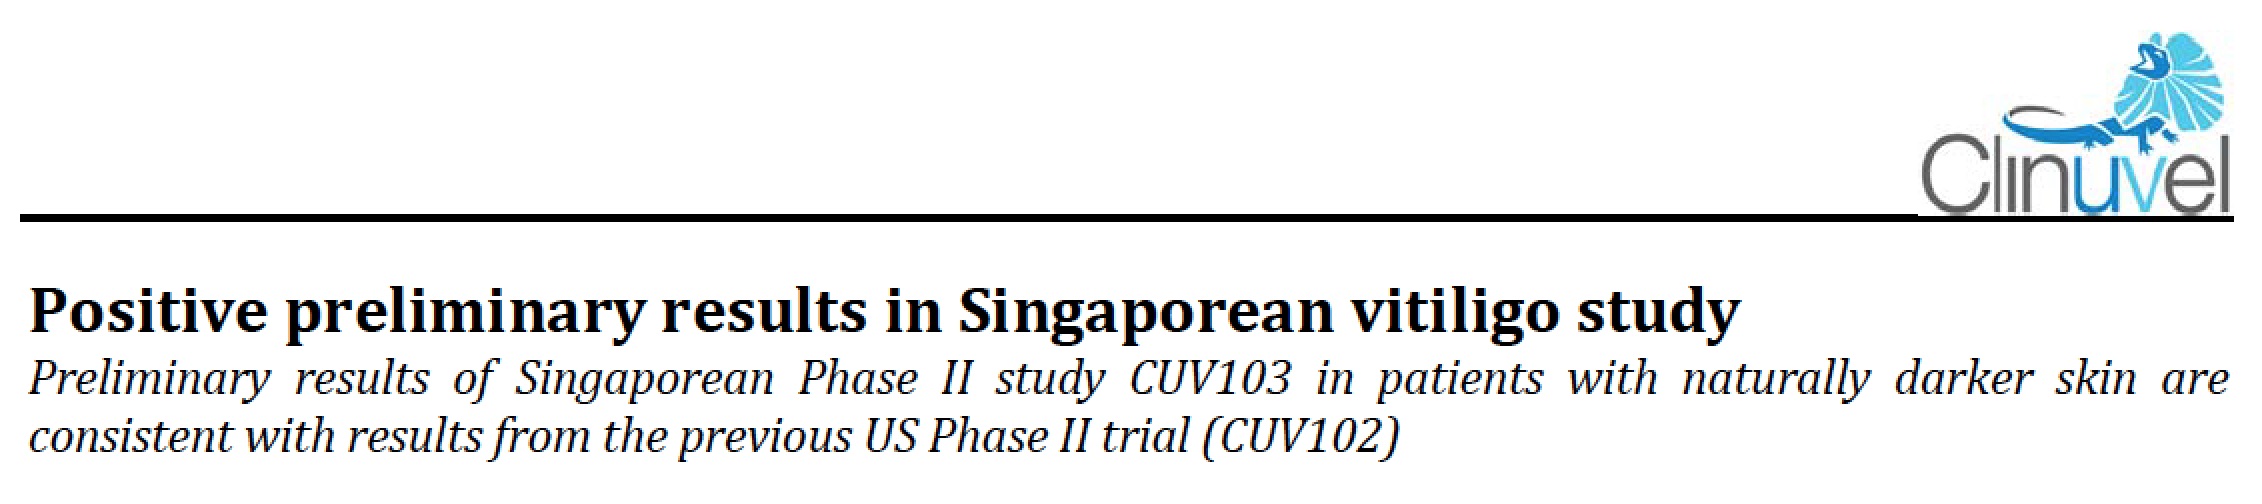 Afamelanotide for vitiligo Singapore study